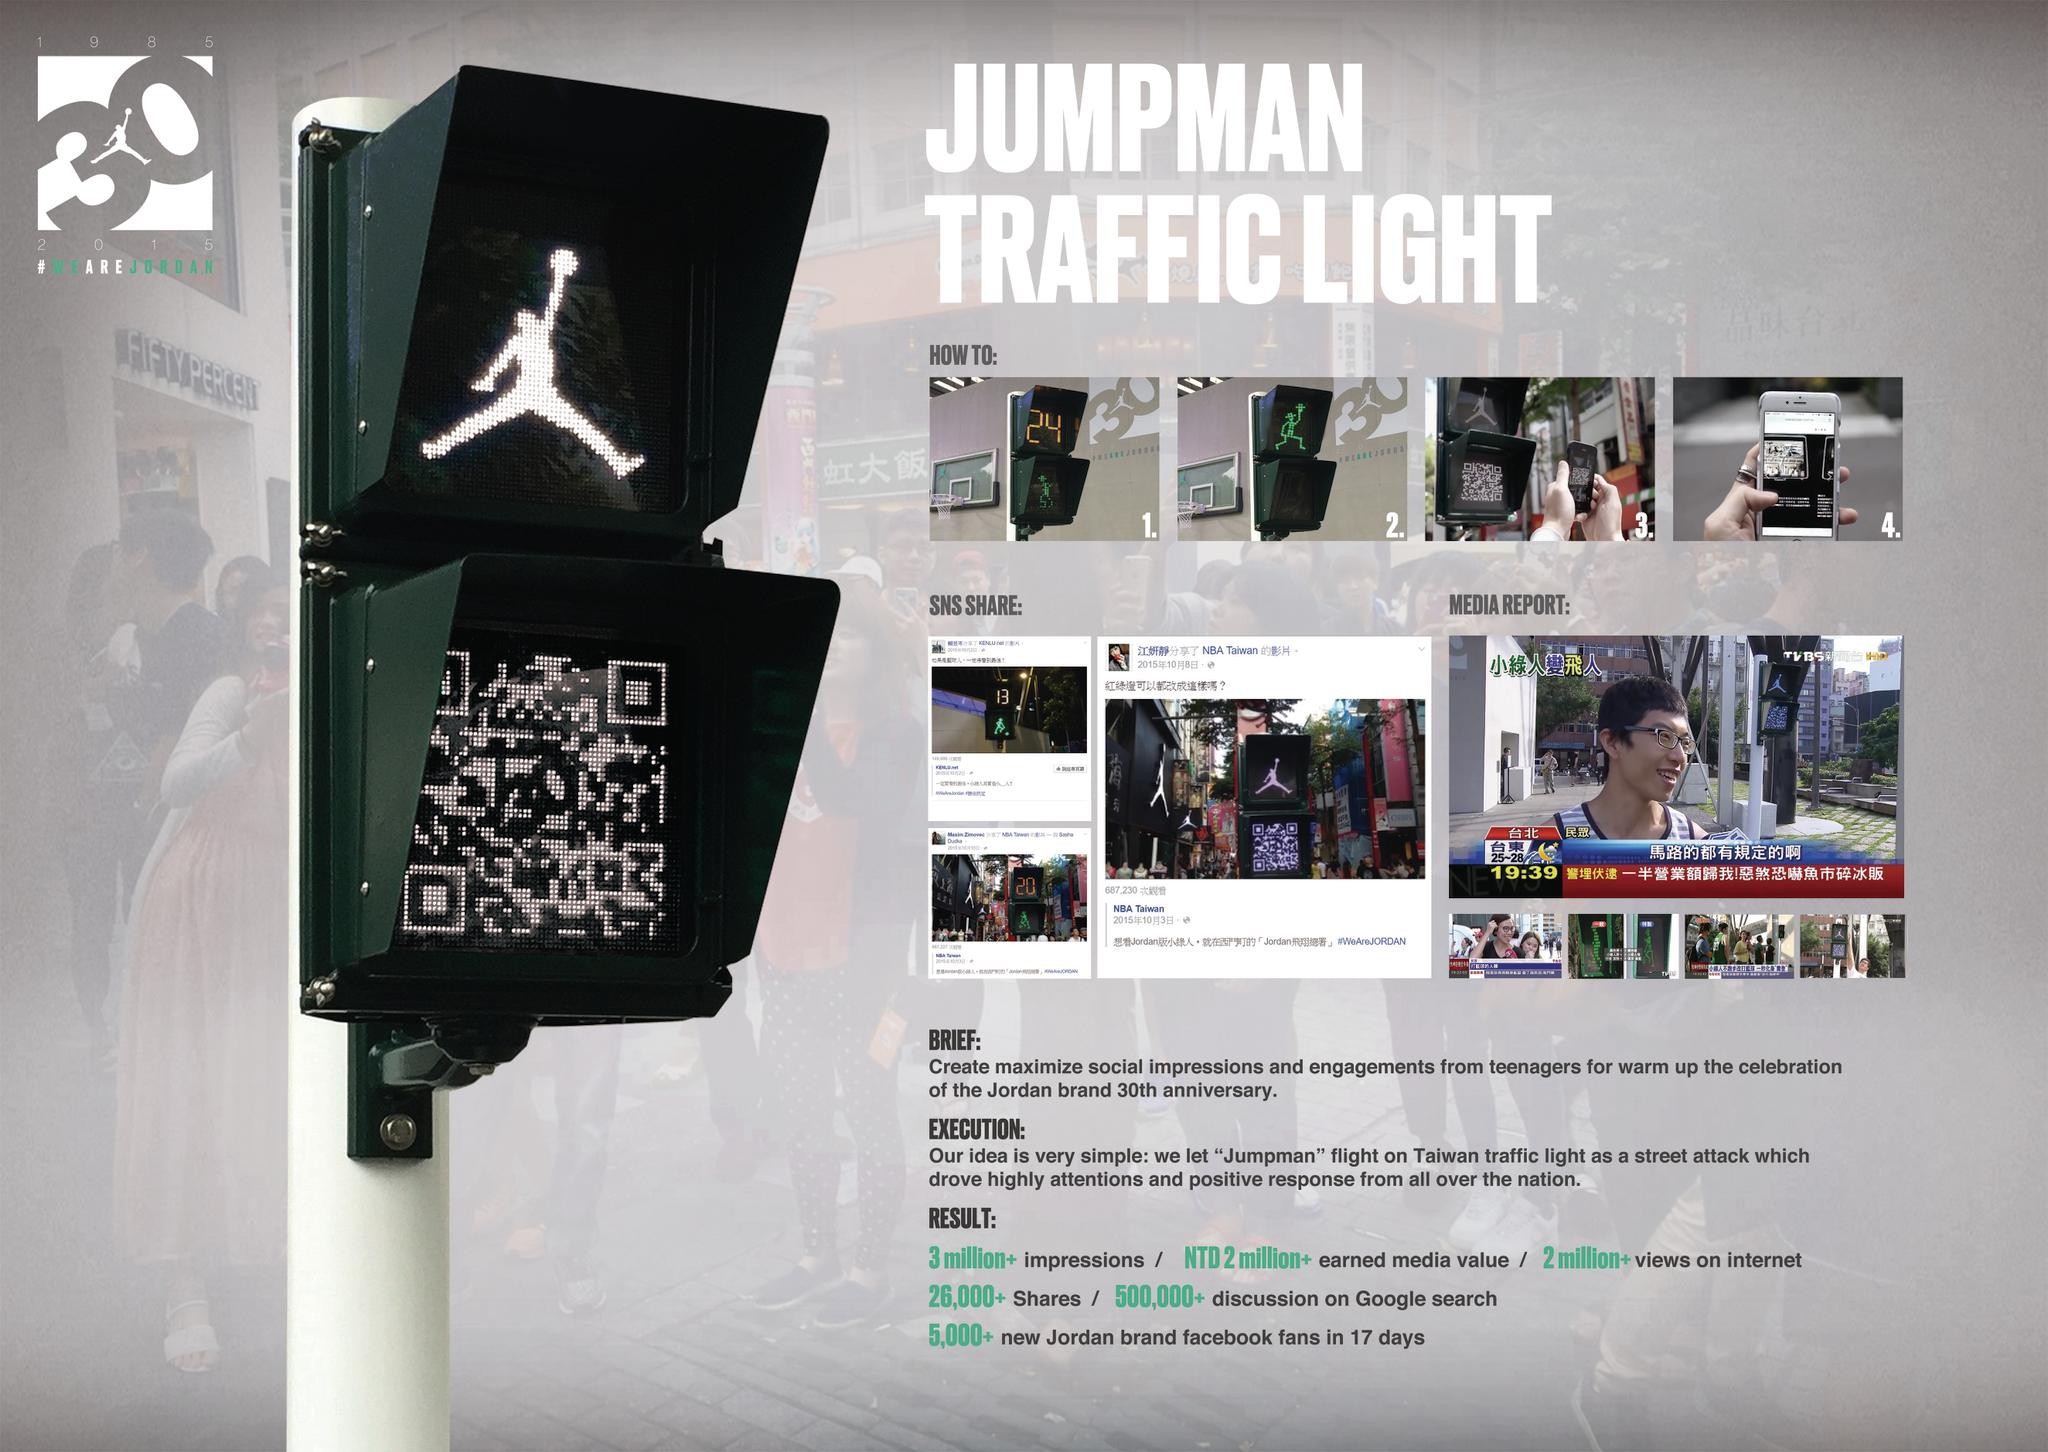 Jumpman traffic light